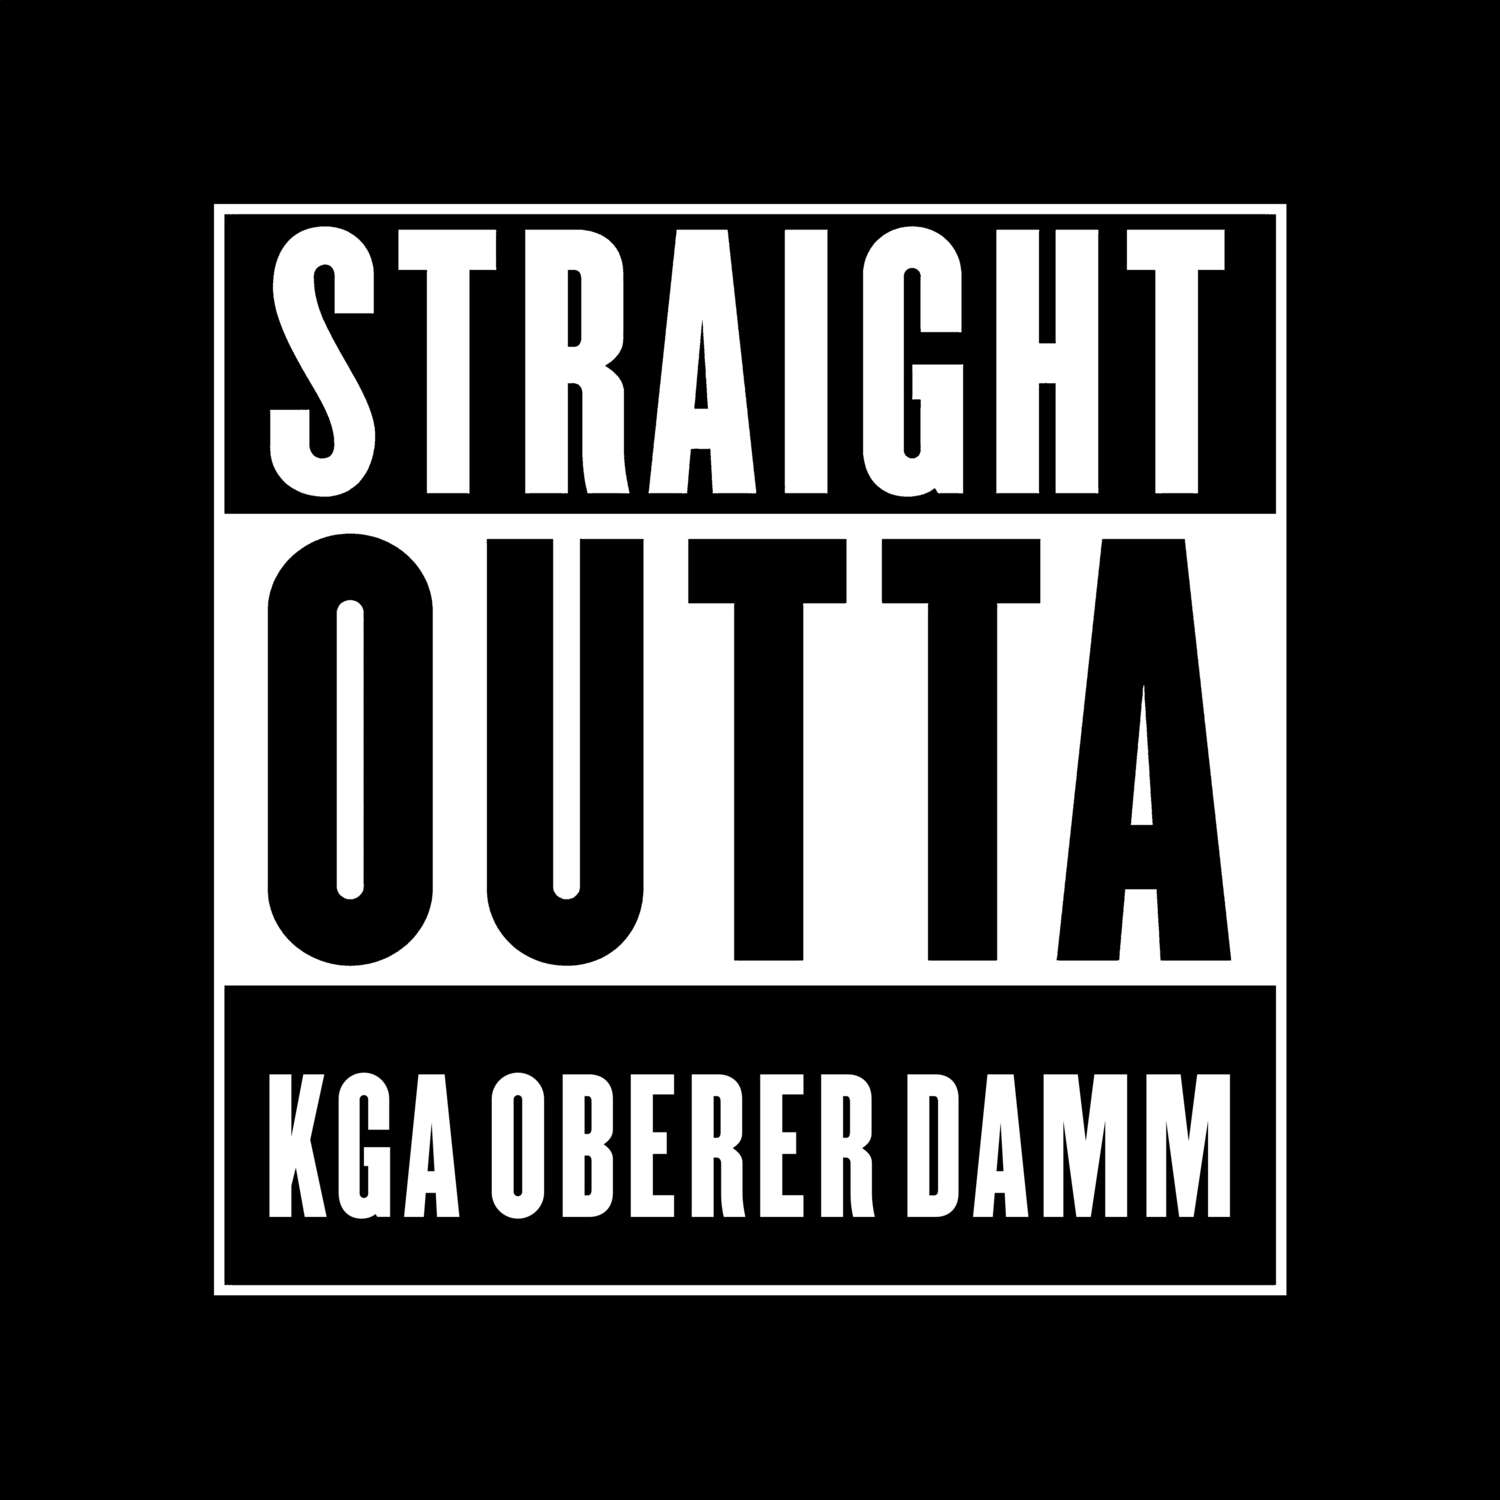 KGA Oberer Damm T-Shirt »Straight Outta«